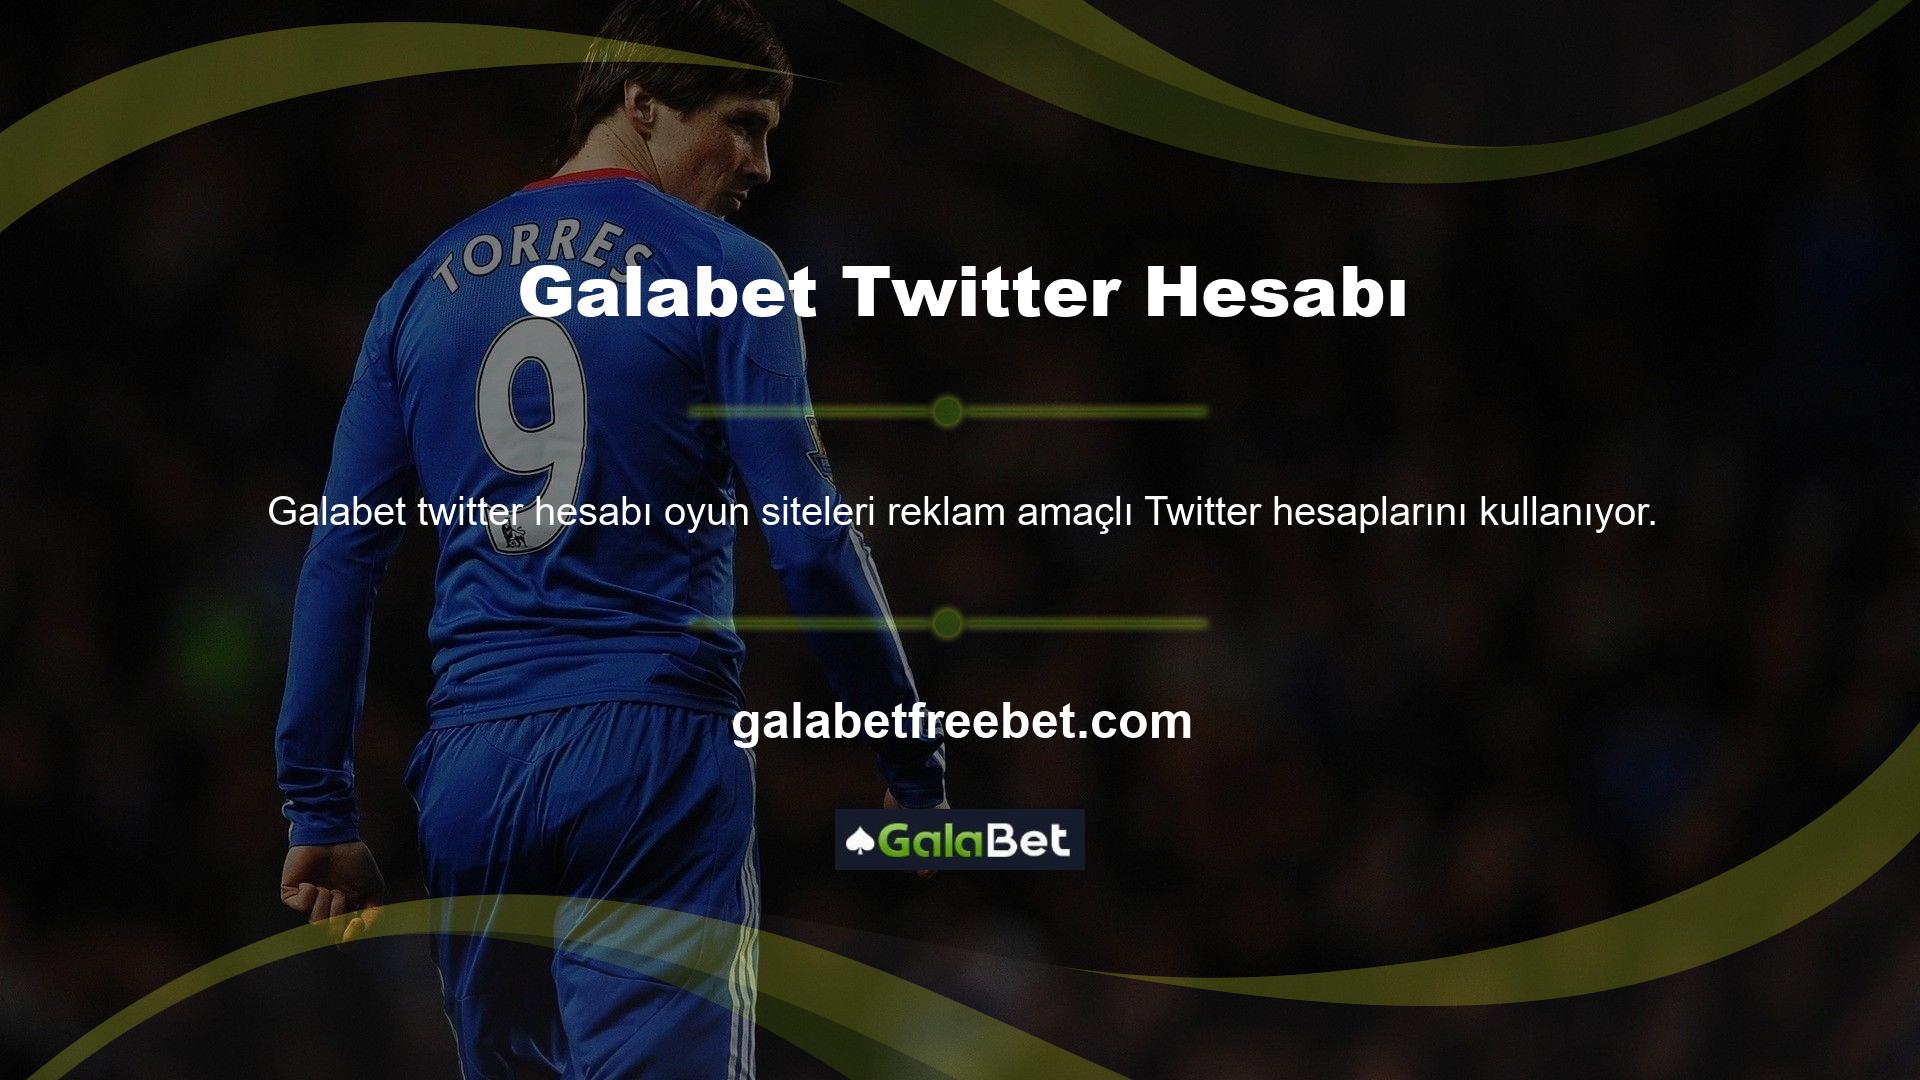 Casino sitesine üye olmayanlar ise Galabet Twitter hesabında paylaşılan bonus reklamını izleyerek siteye erişim sağlayabilmektedir